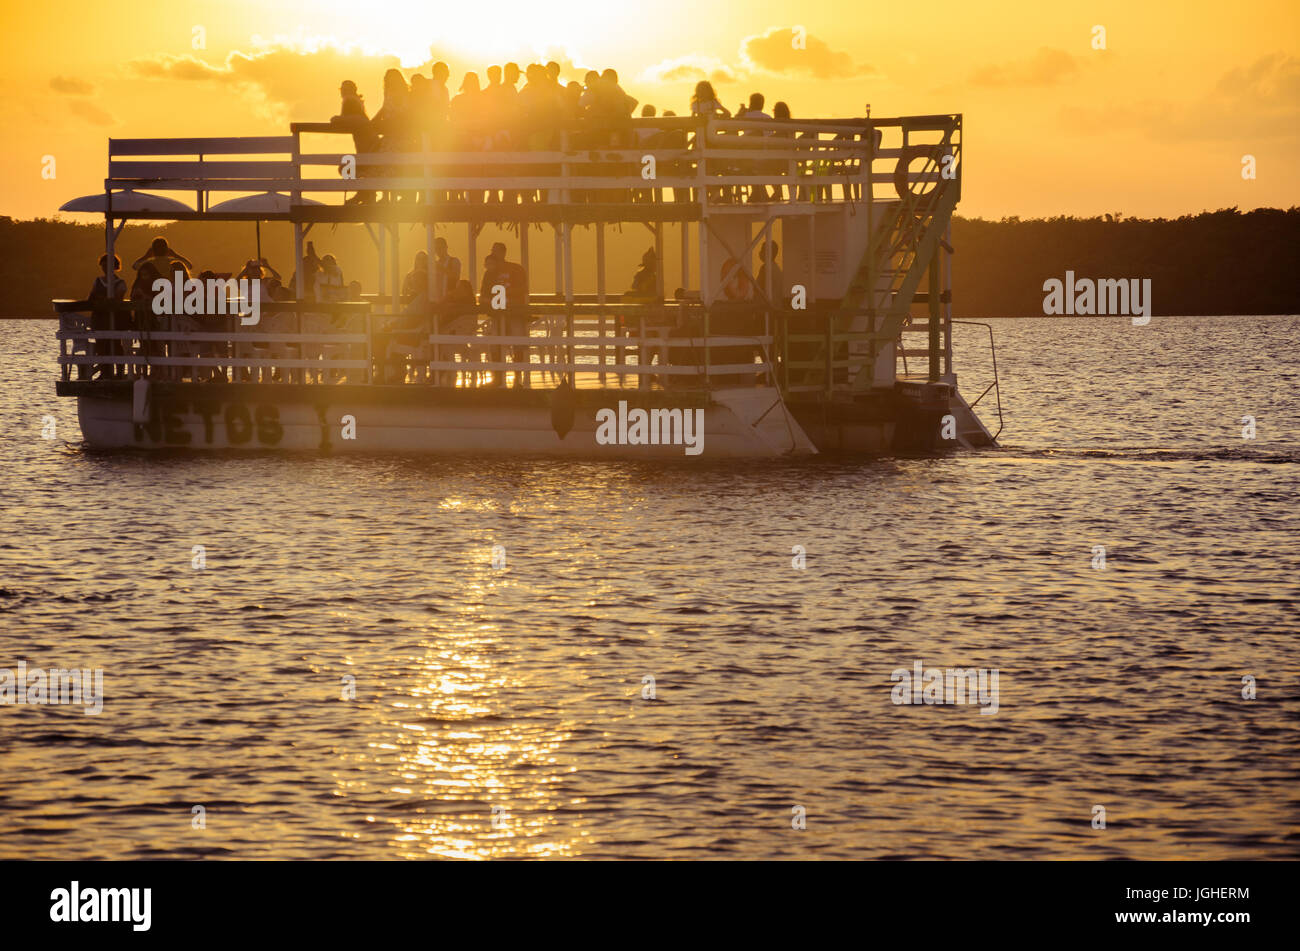 Joao Pessoa, PB, Brasile - 8 Dicembre 2016: tour in barca che trasporta persone su gite in barca a vela nelle acque di Praia do Jacare Beach. Fotografia di bo Foto Stock